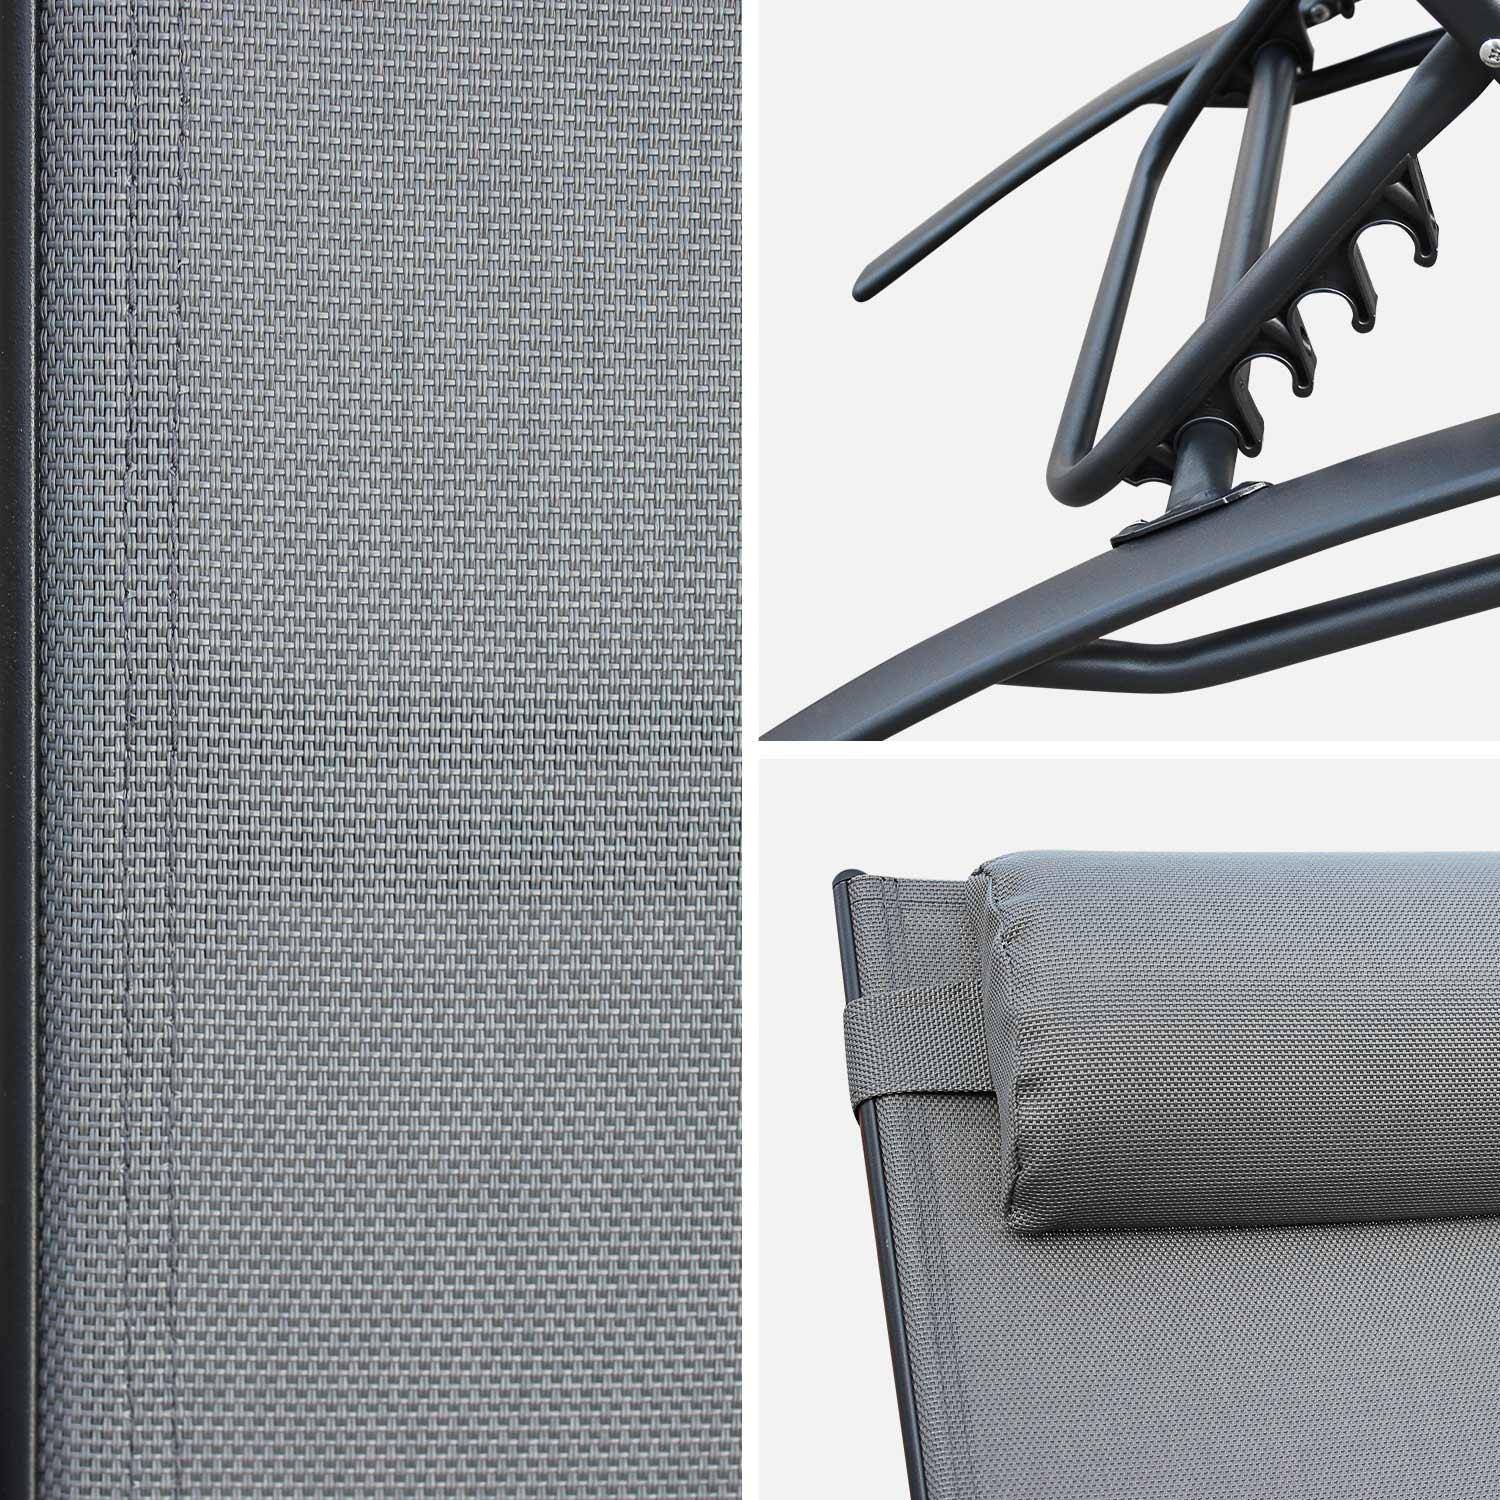 Coppia di lettini prendisole, in alluminio - Louisa, colore: Antracite - Sdraio in alluminio e textilene Photo5